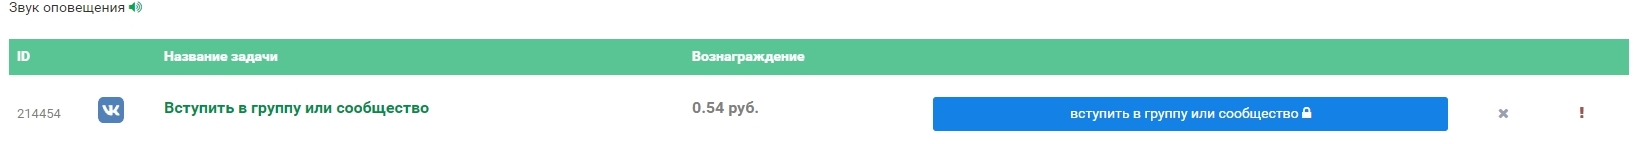 Пример задания на Cashbox.ru 